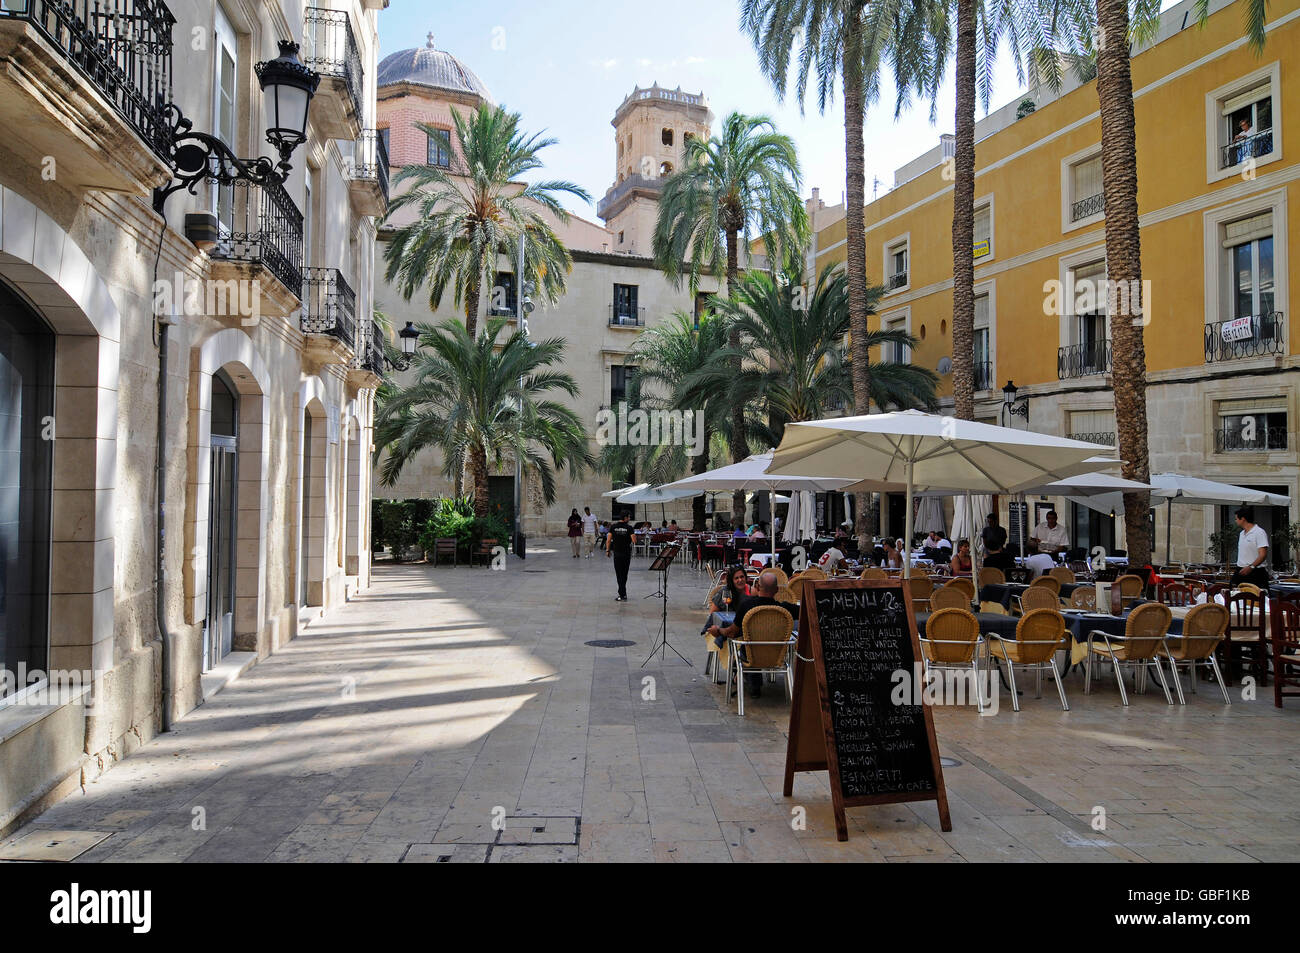 Street restaurant, Plaza de La Santissima Faz, square, historic center, Alicante, Province of Alicante, Spain, Europe Stock Photo